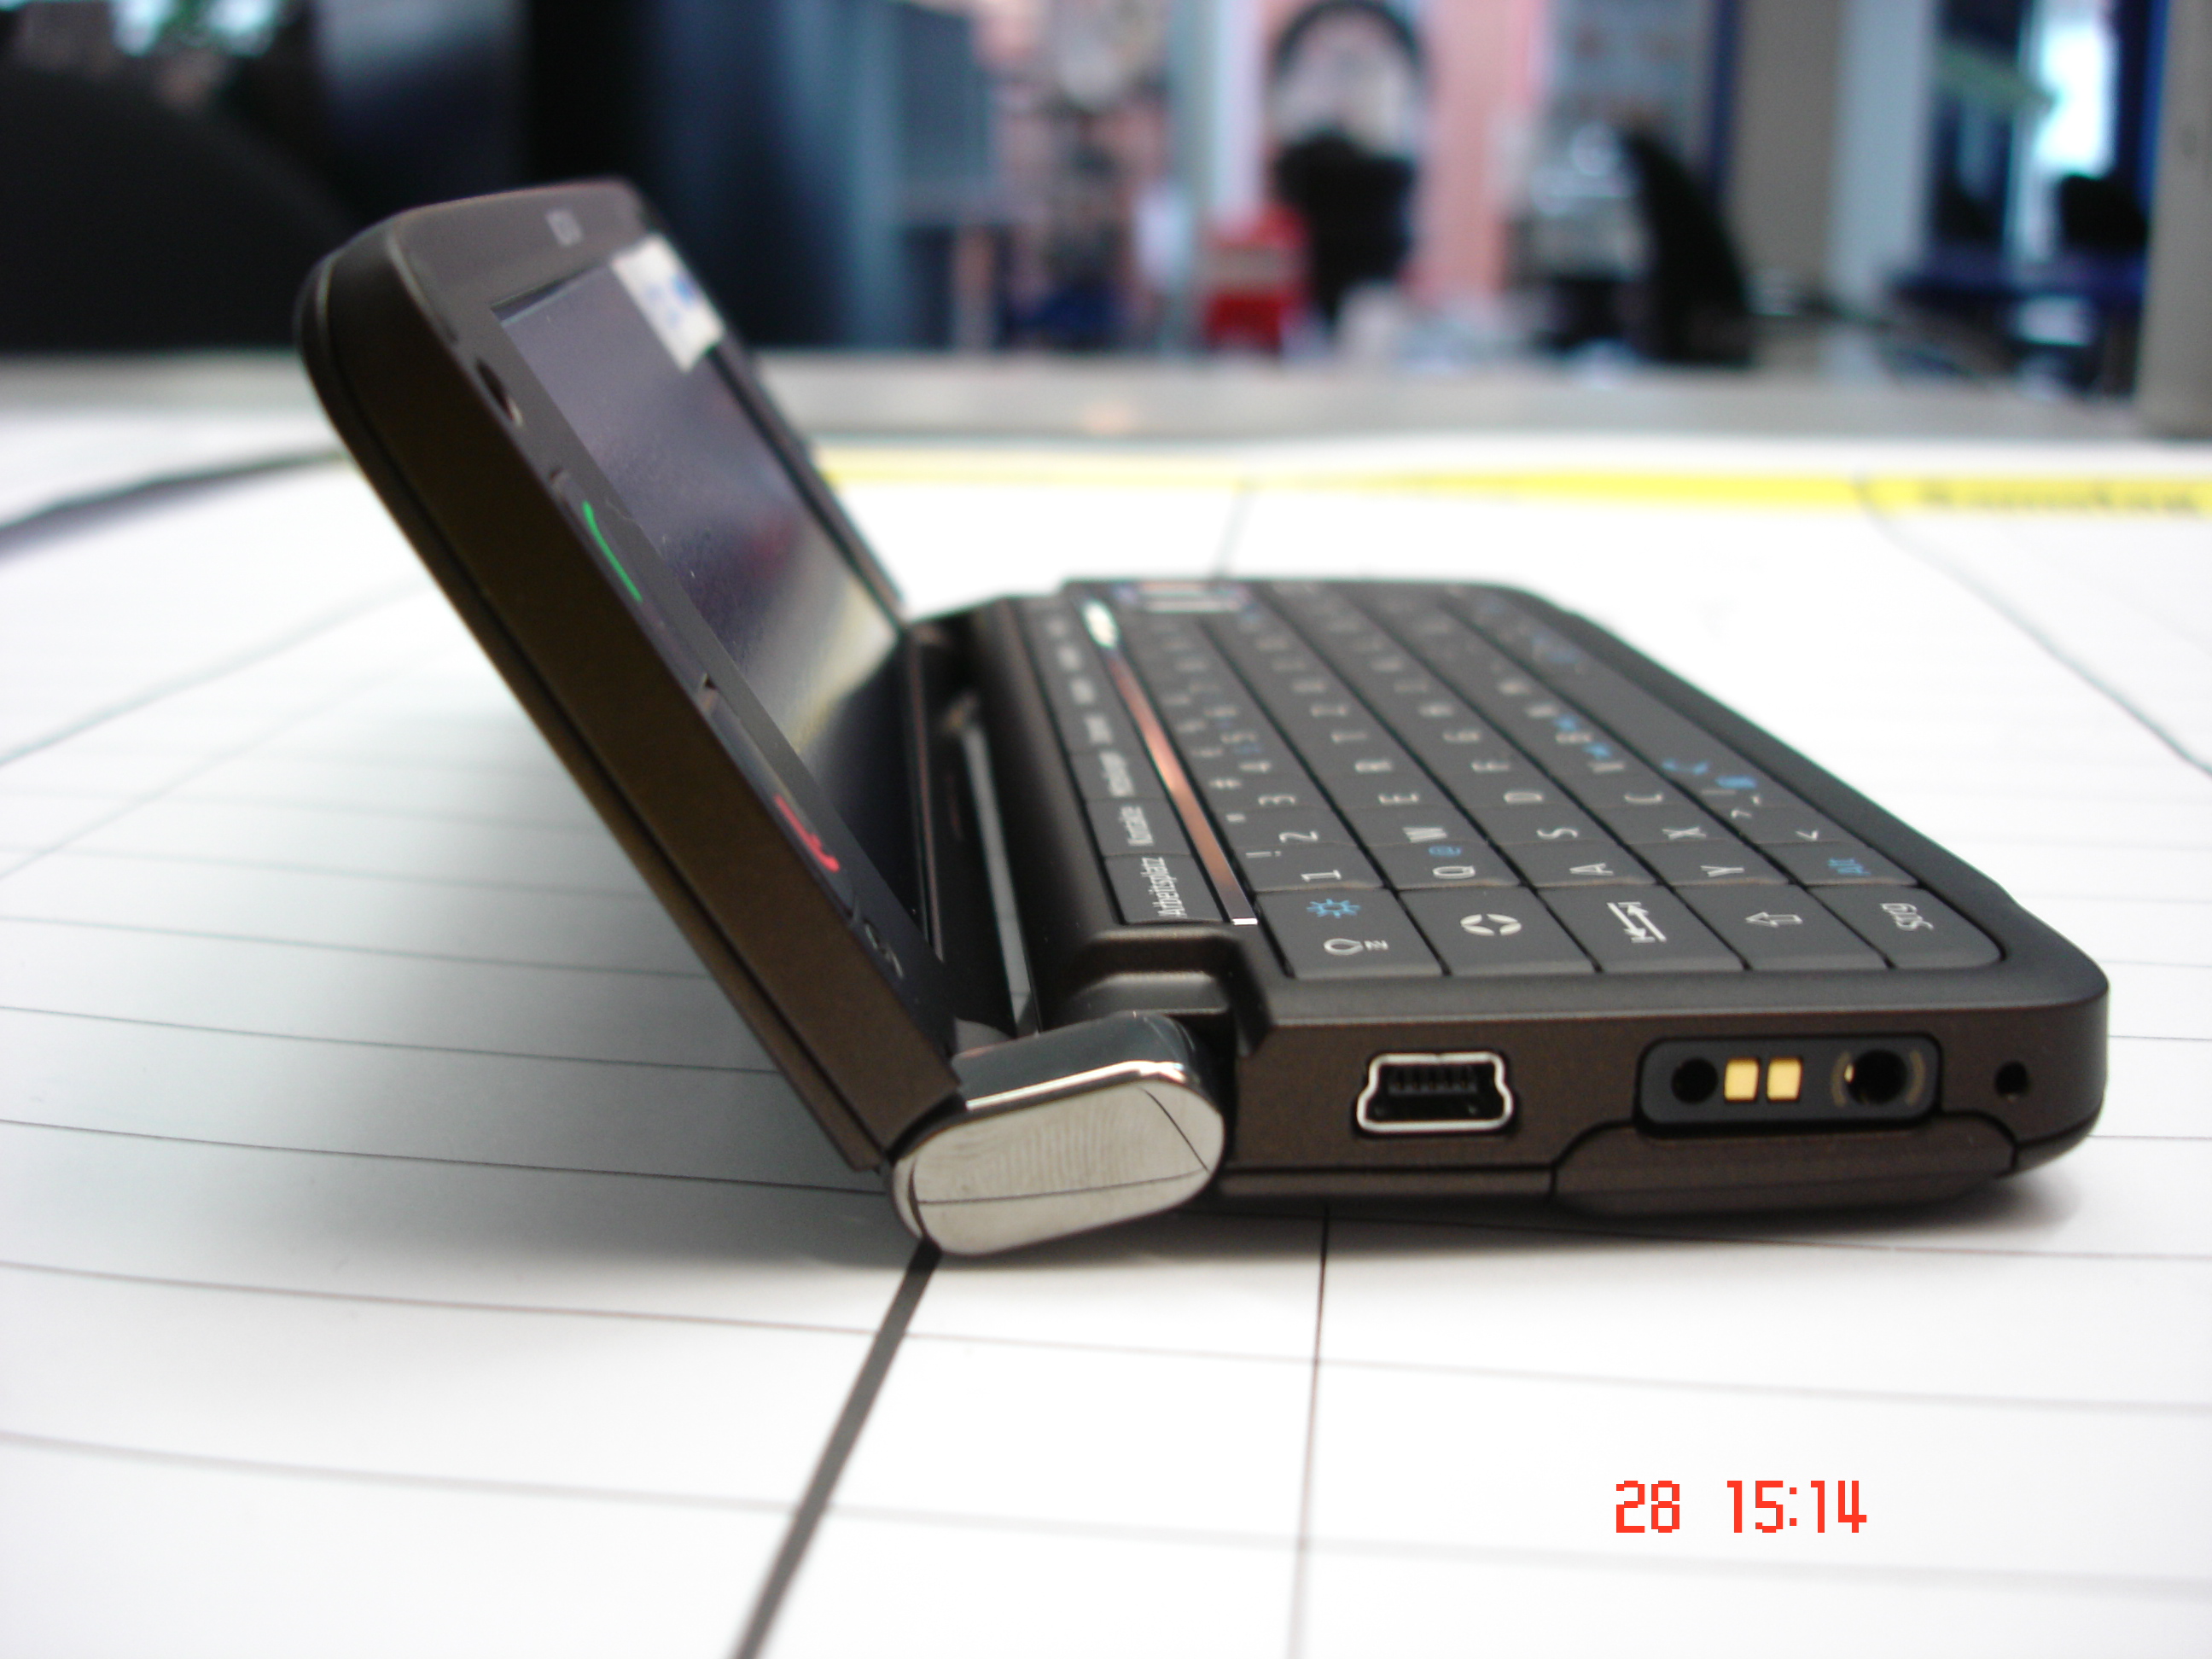 Nokia 7600 3G UMTS 2100 Original Bluetooth 2.0 0.3MP Phone